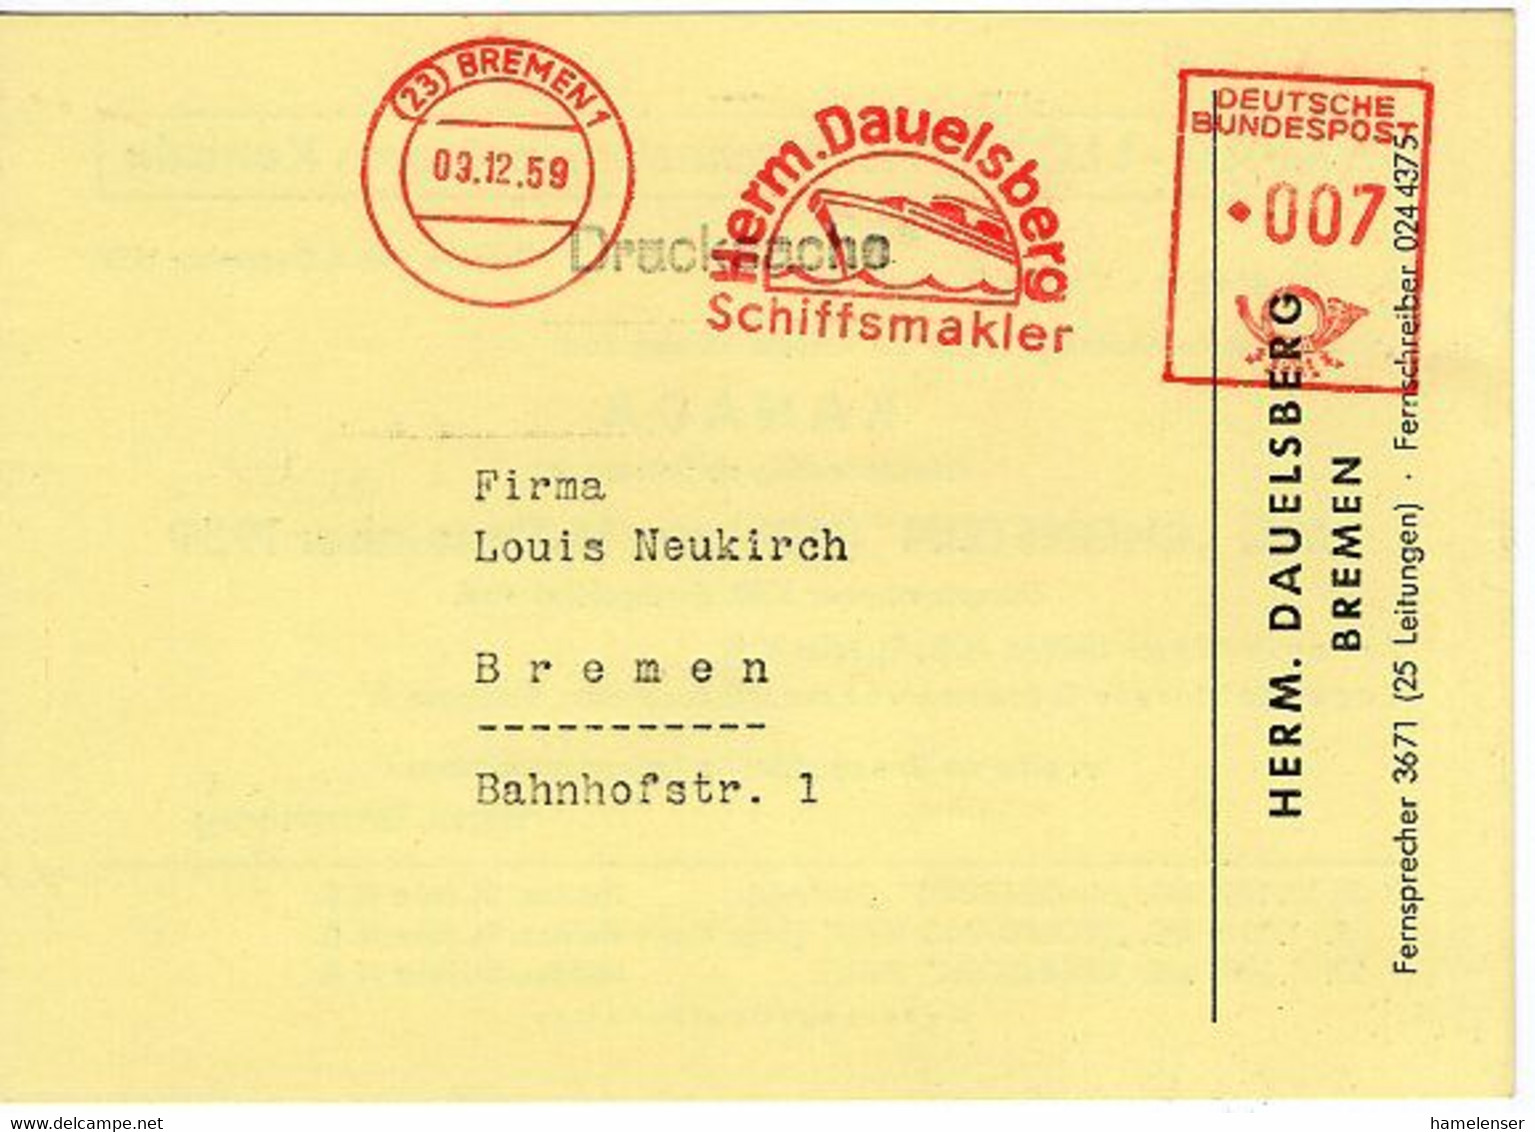 50638 - Bund - 1959 - 7Pfg. AFS A. DrucksKte. BREMEN - HERM. DAUELSBERG SCHIFFSMAKLER -> Bremen - Maritiem